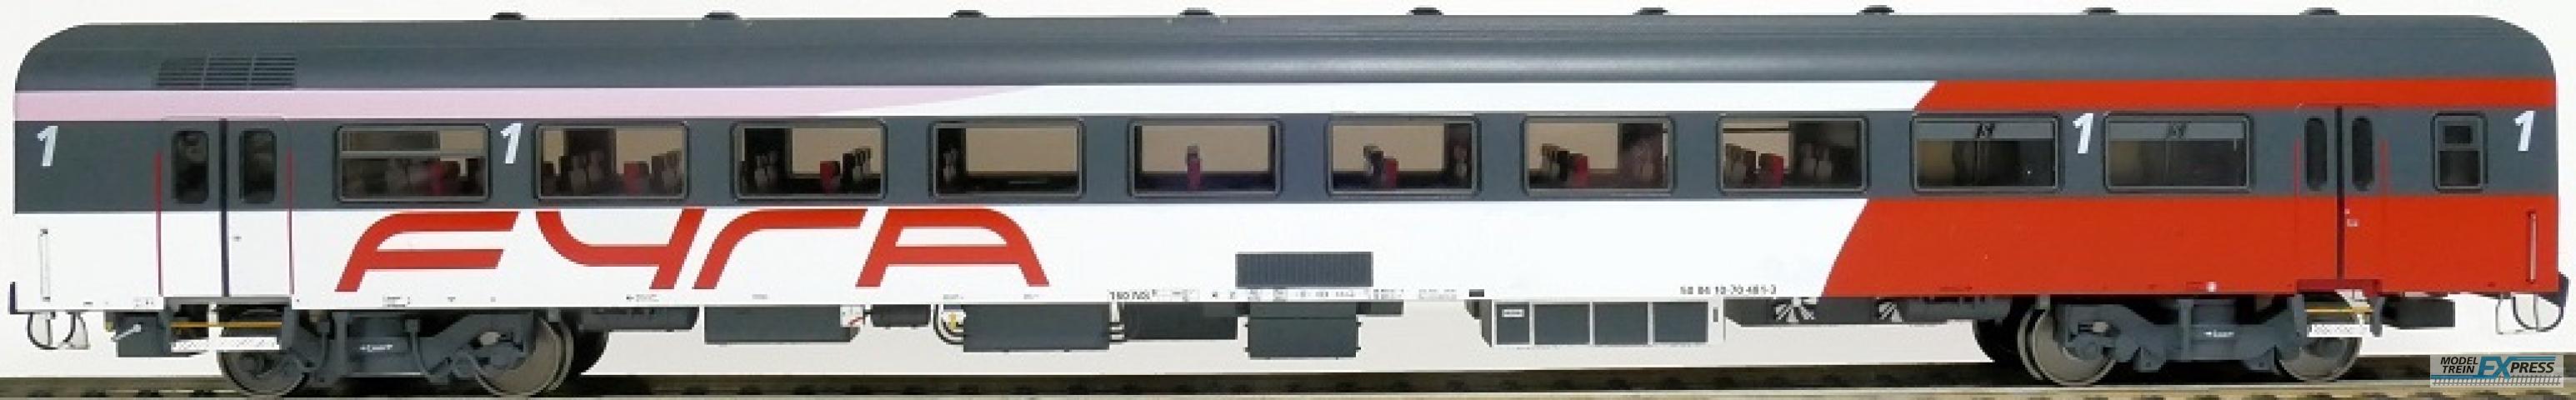 Exact-train 11144 ICRm Fyra 1 (Amsterdam - Brussel) für die Hsl-Strecke eingesetzt Reisezugwagen A(Rot/Weiss/Rose), Ep. VI